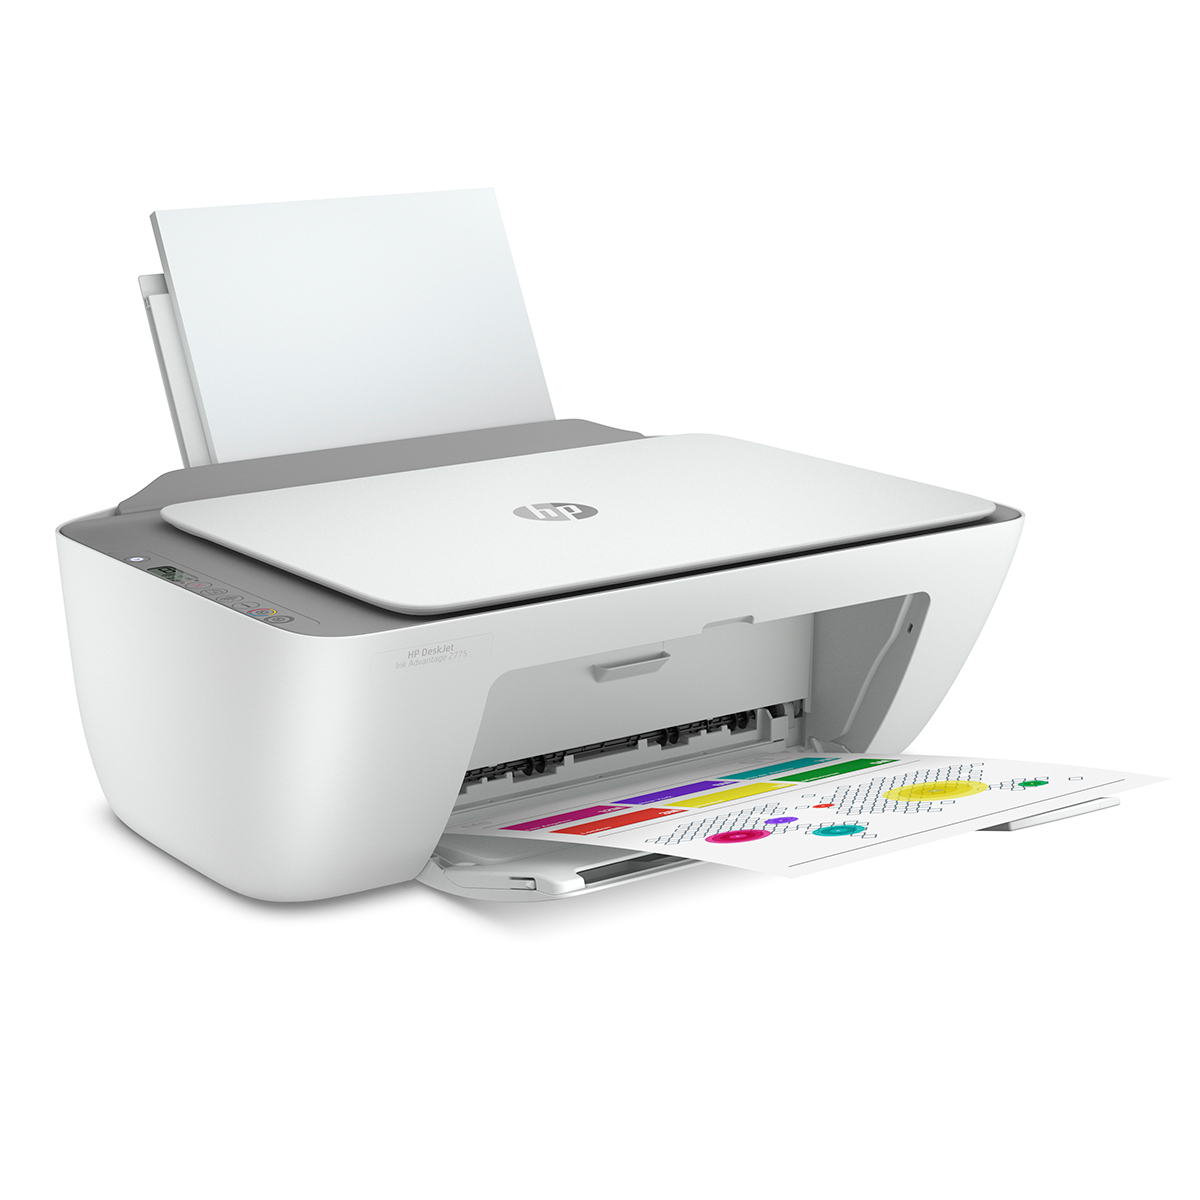 Impresora Multifuncional Hp Deskjet Ink Advantage 2775 Inyección de tinta  Color WiFi USB